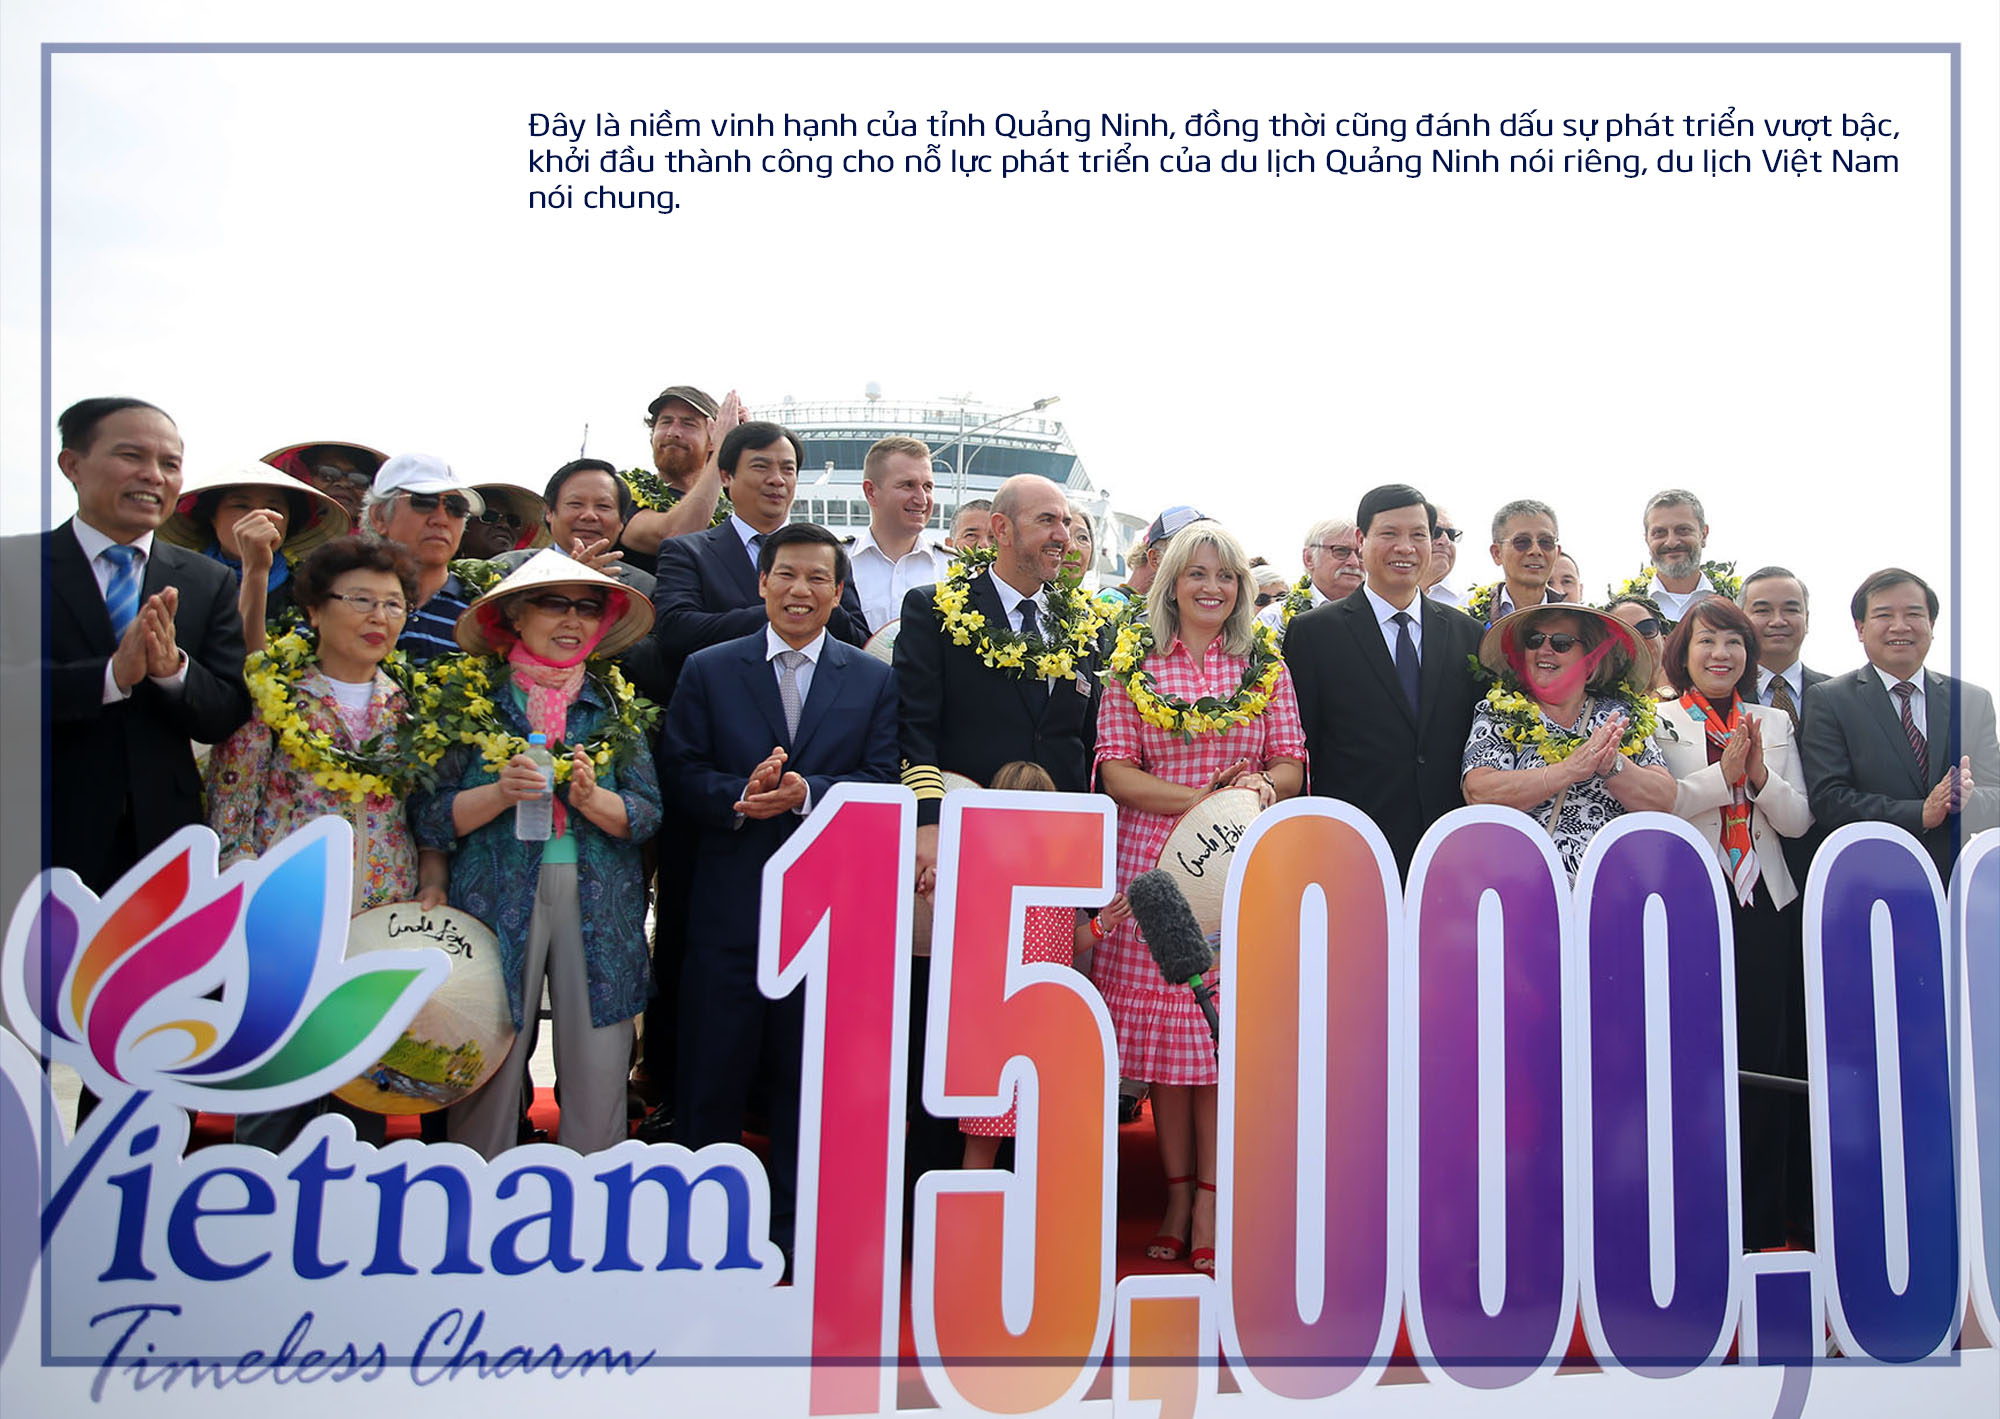 đây là sắp đặt có chủ ý của Quảng Ninh năm nay là năm du lịch quốc gia tại Quảng Ninh